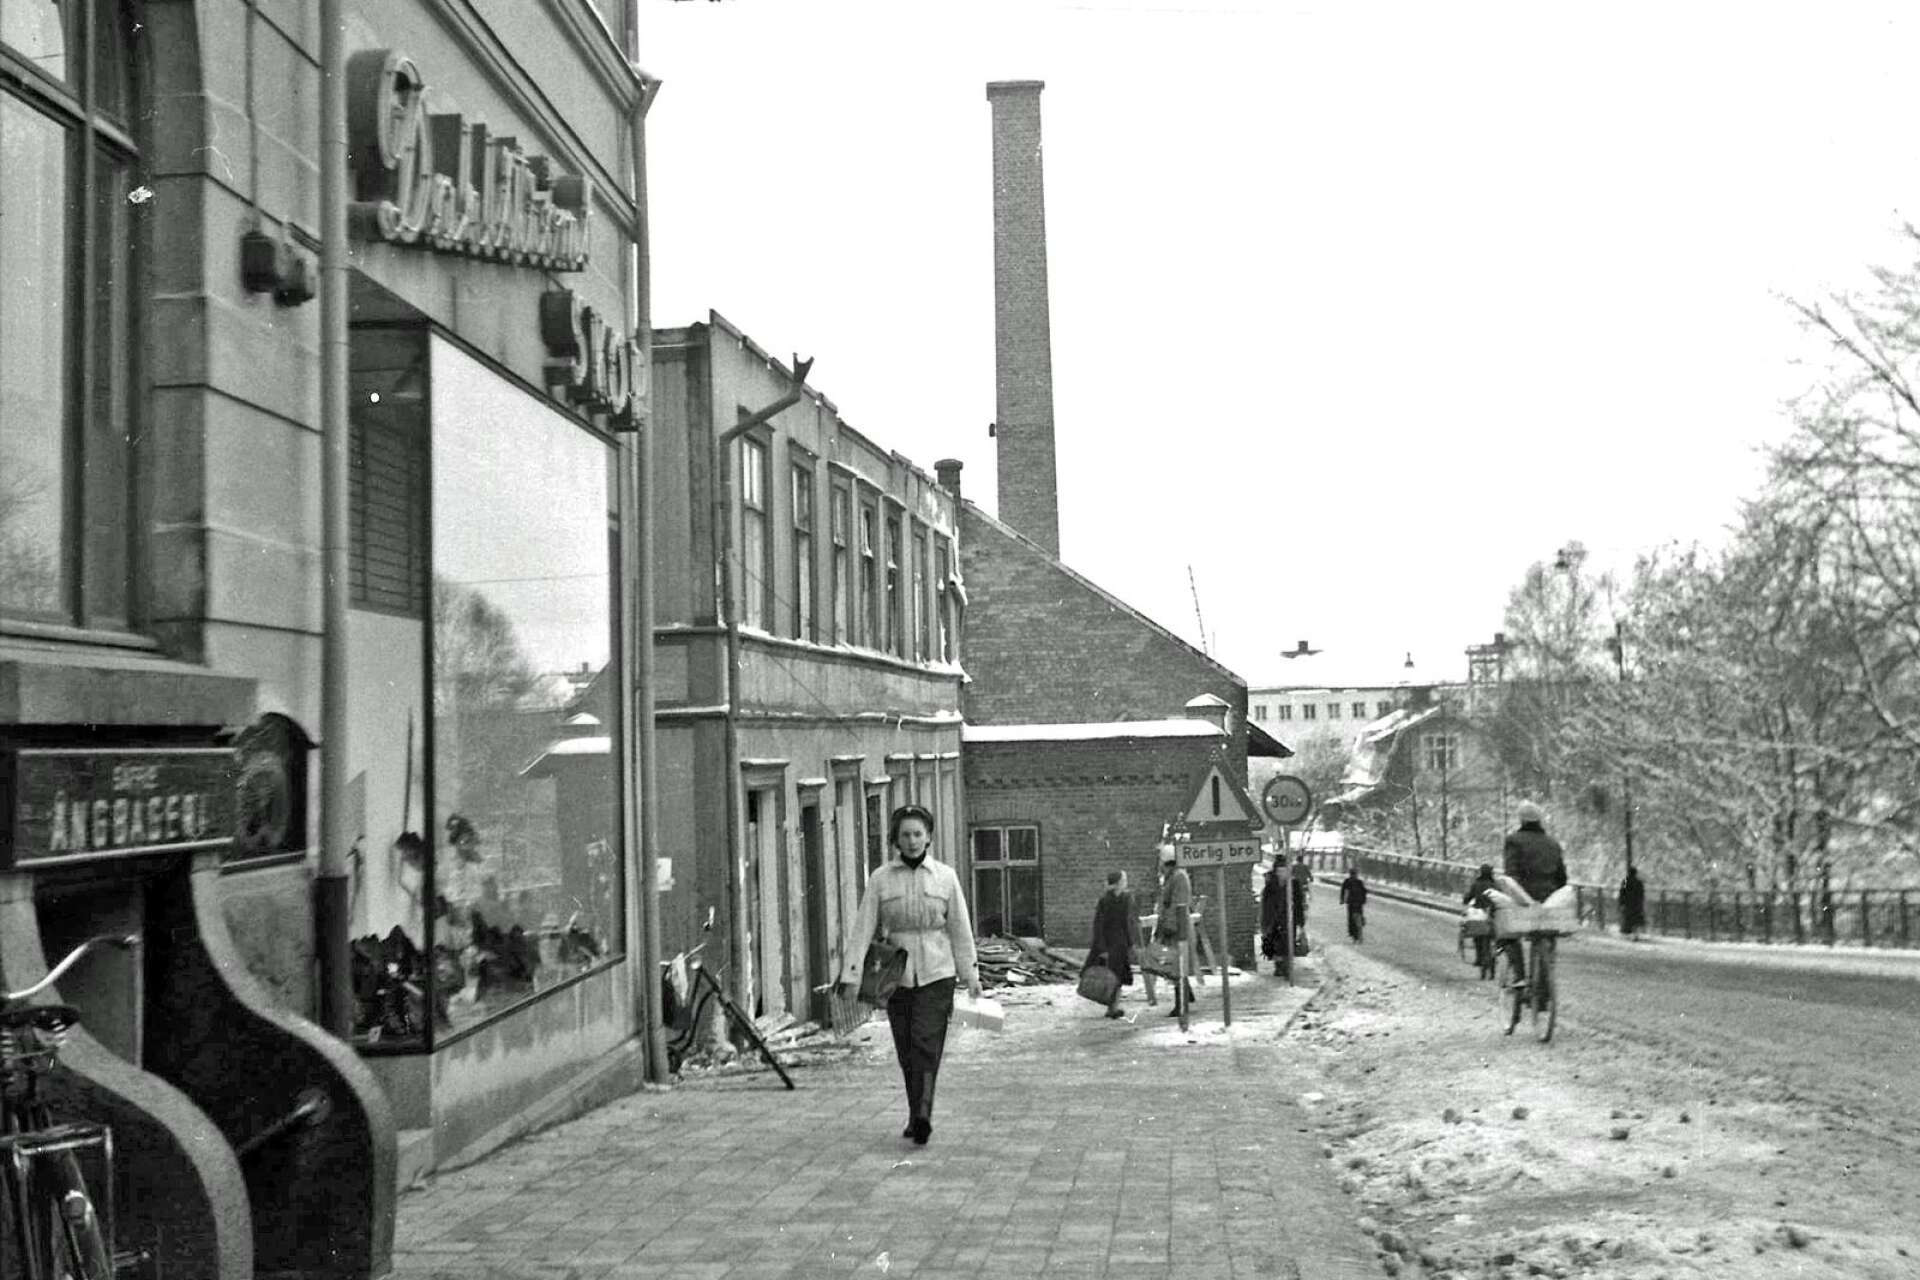 Längst till vänster i bilden ses nedgången till Säffle Ångbageri, som låg i källarplanet. Bilden är tagen 1952 efter att grannfastigheten hade eldhärjats.